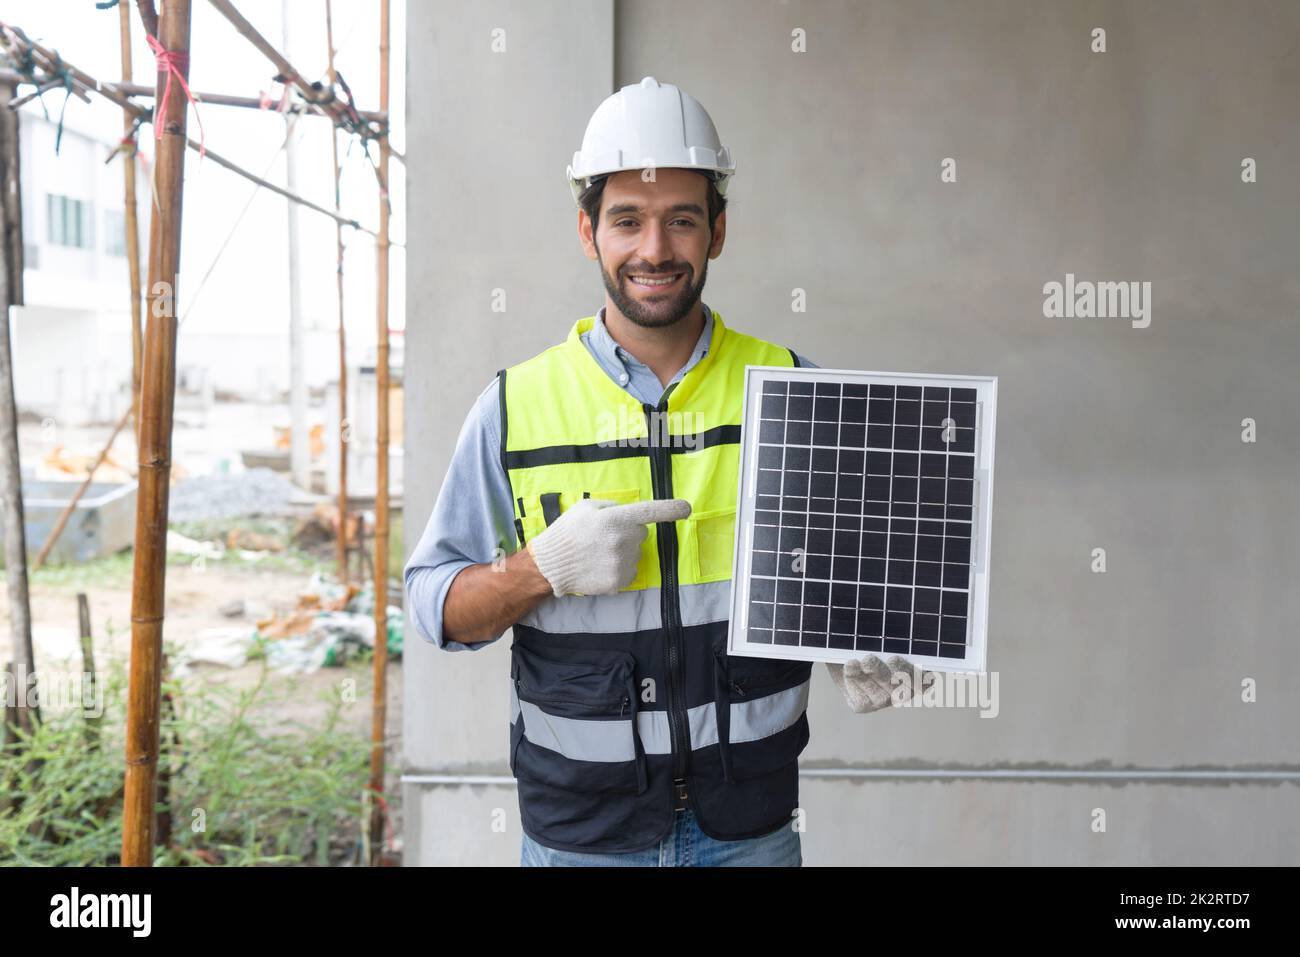 Der junge Ingenieur in Schutzweste und Handschuh zeigt mit dem Finger auf die Solarzellenplatte und stellt mit einem Lächeln eine Energiequelle dar, um Gleichstrom zu erzeugen. Stockfoto